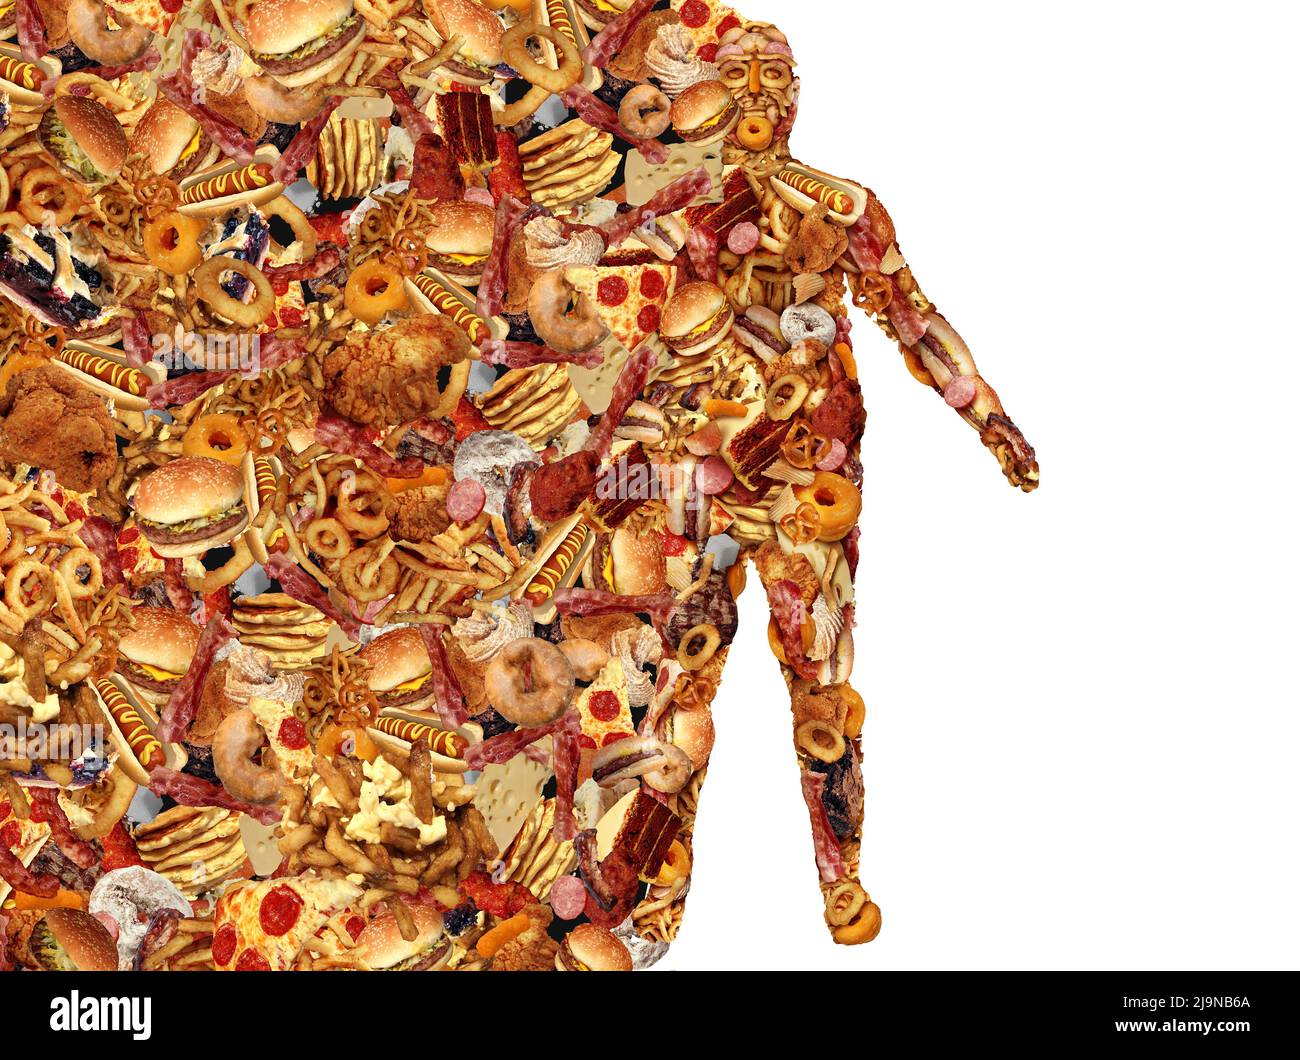 Comida Rápida y el Cuerpo Humano hecho de comida junkfood como un concepto de problema de nutrición y salud dietética como una persona obesa o símbolo de obesidad y diabetes. Foto de stock